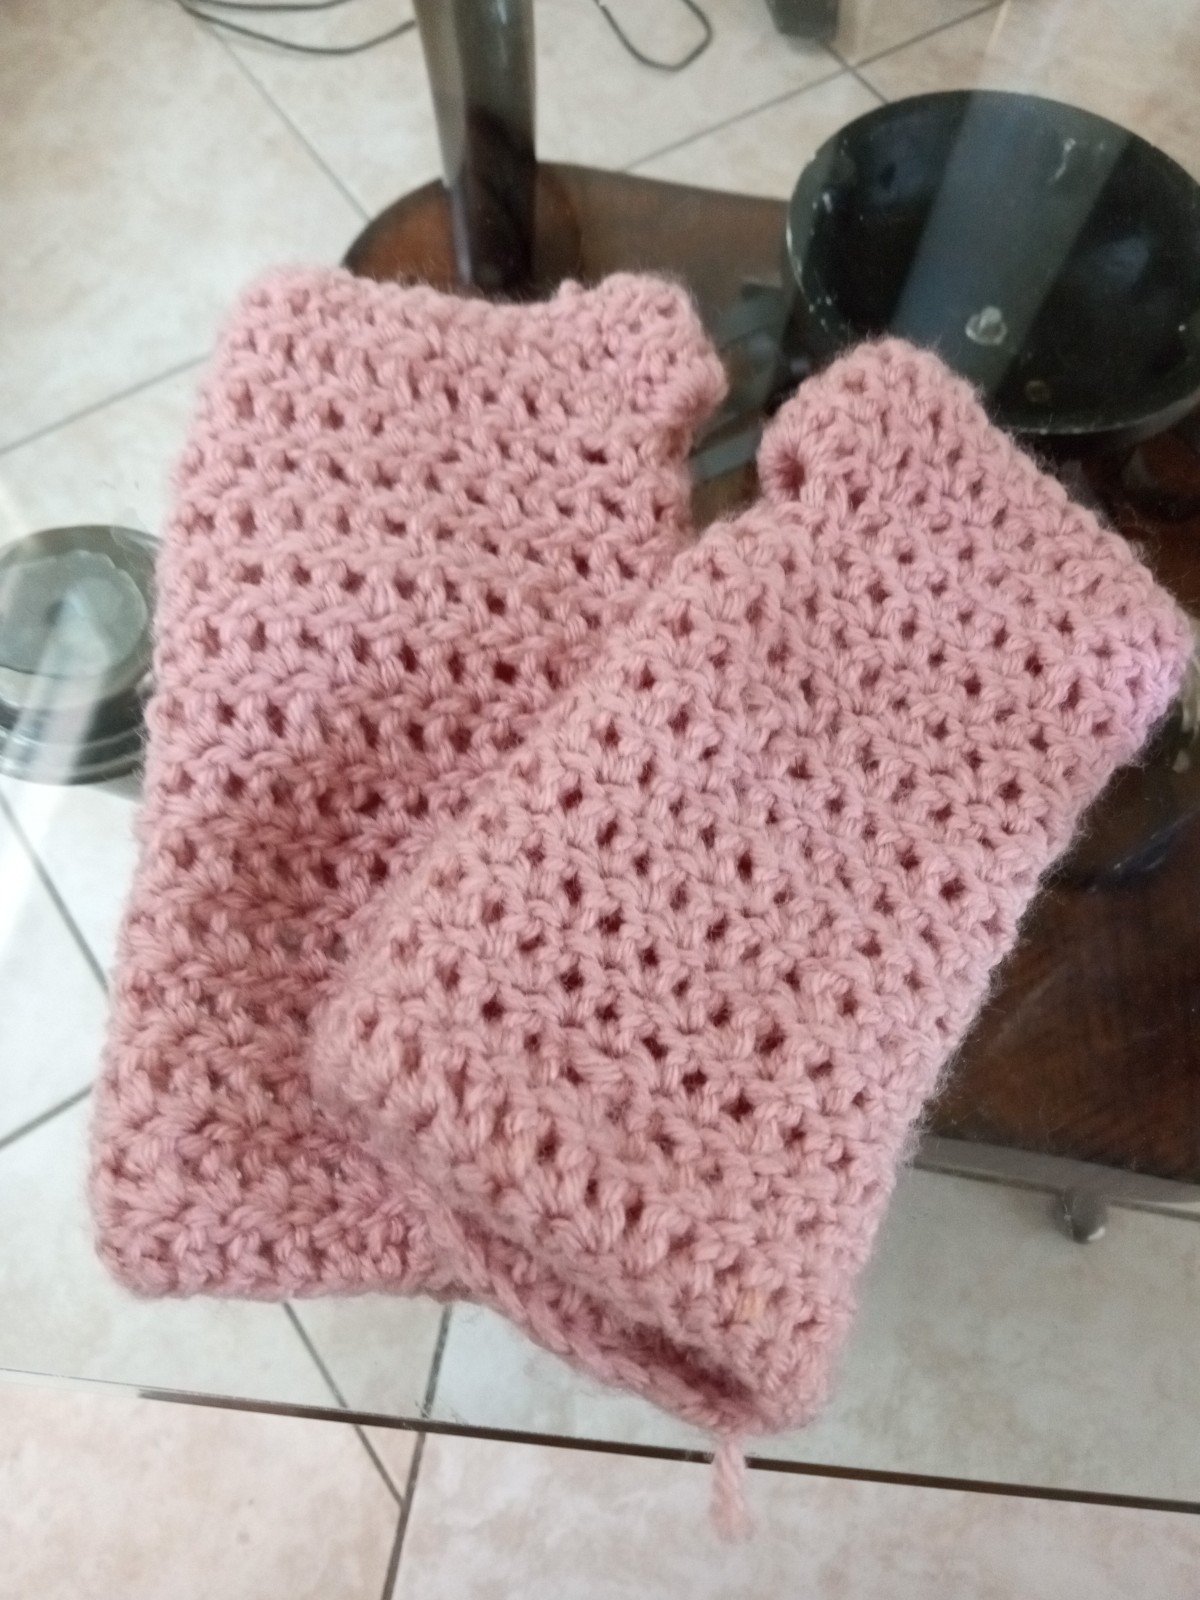 Crochet arm warmers L8Rkh0OZK